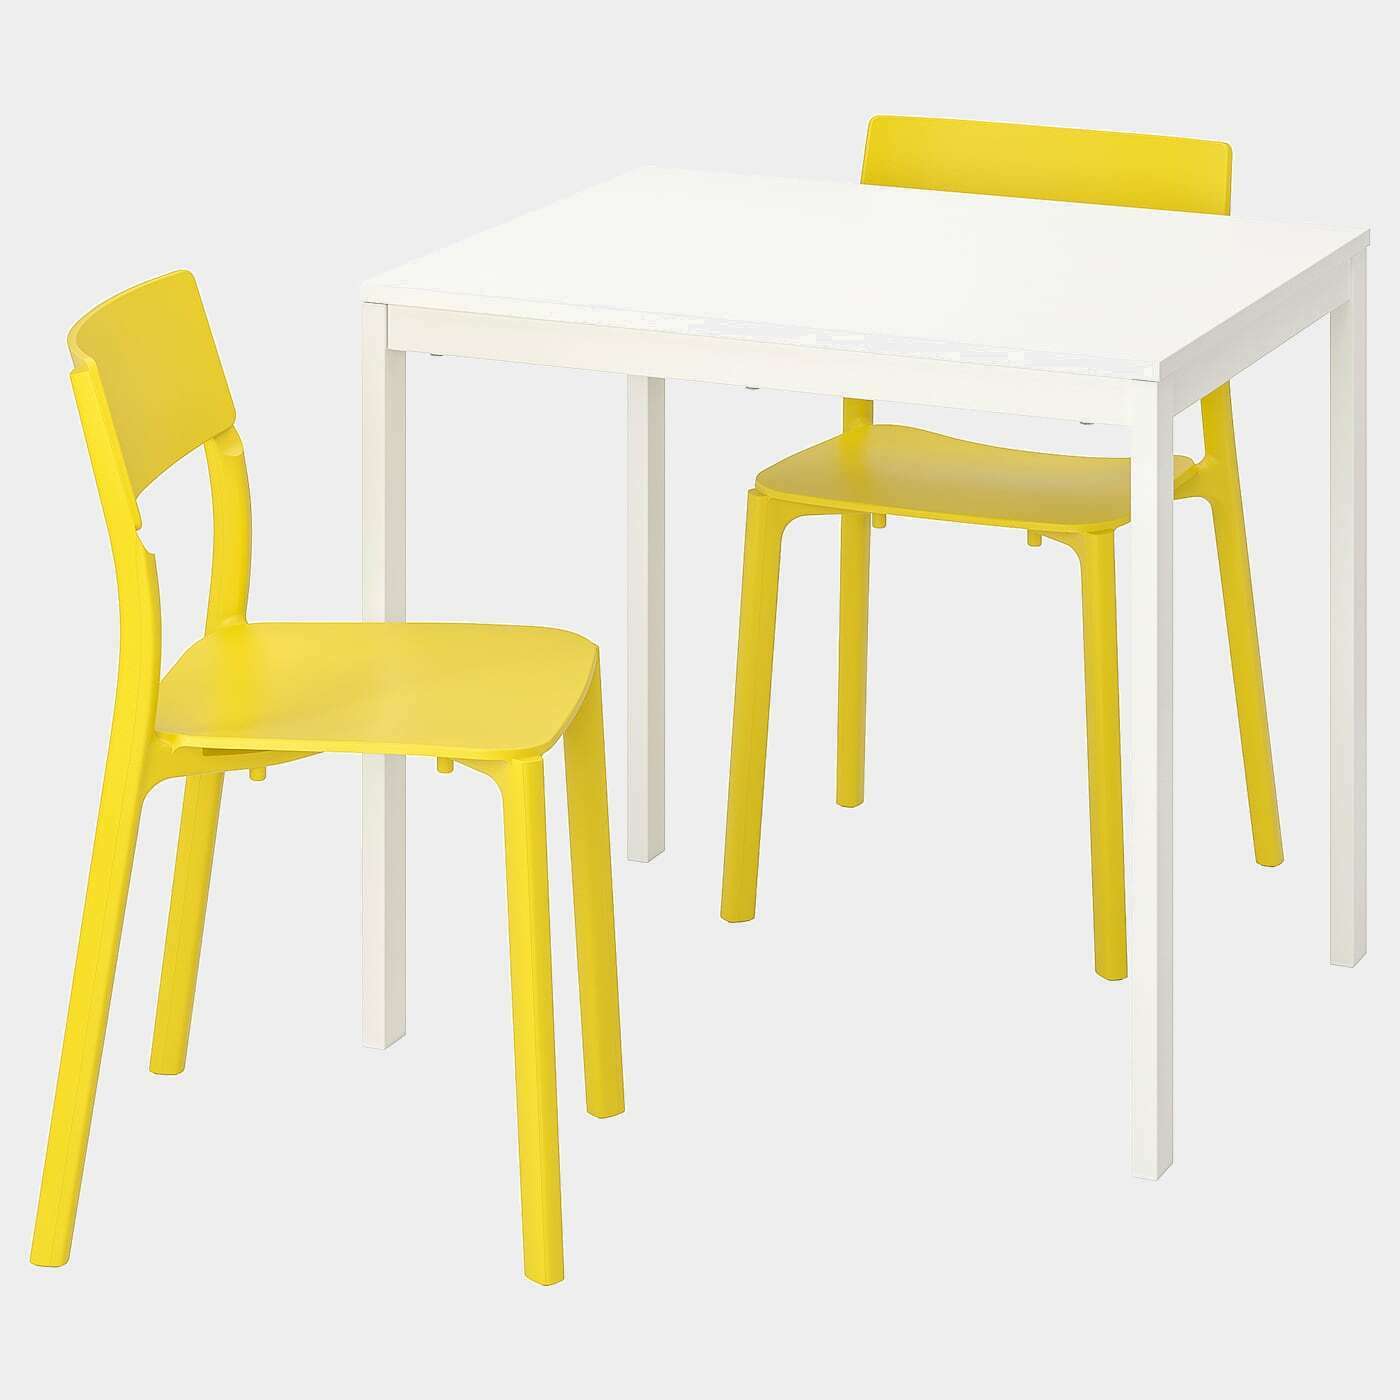 VANGSTA / JANINGE Tisch und 2 Stühle  - Essplatzgruppe - Möbel Ideen für dein Zuhause von Home Trends. Möbel Trends von Social Media Influencer für dein Skandi Zuhause.